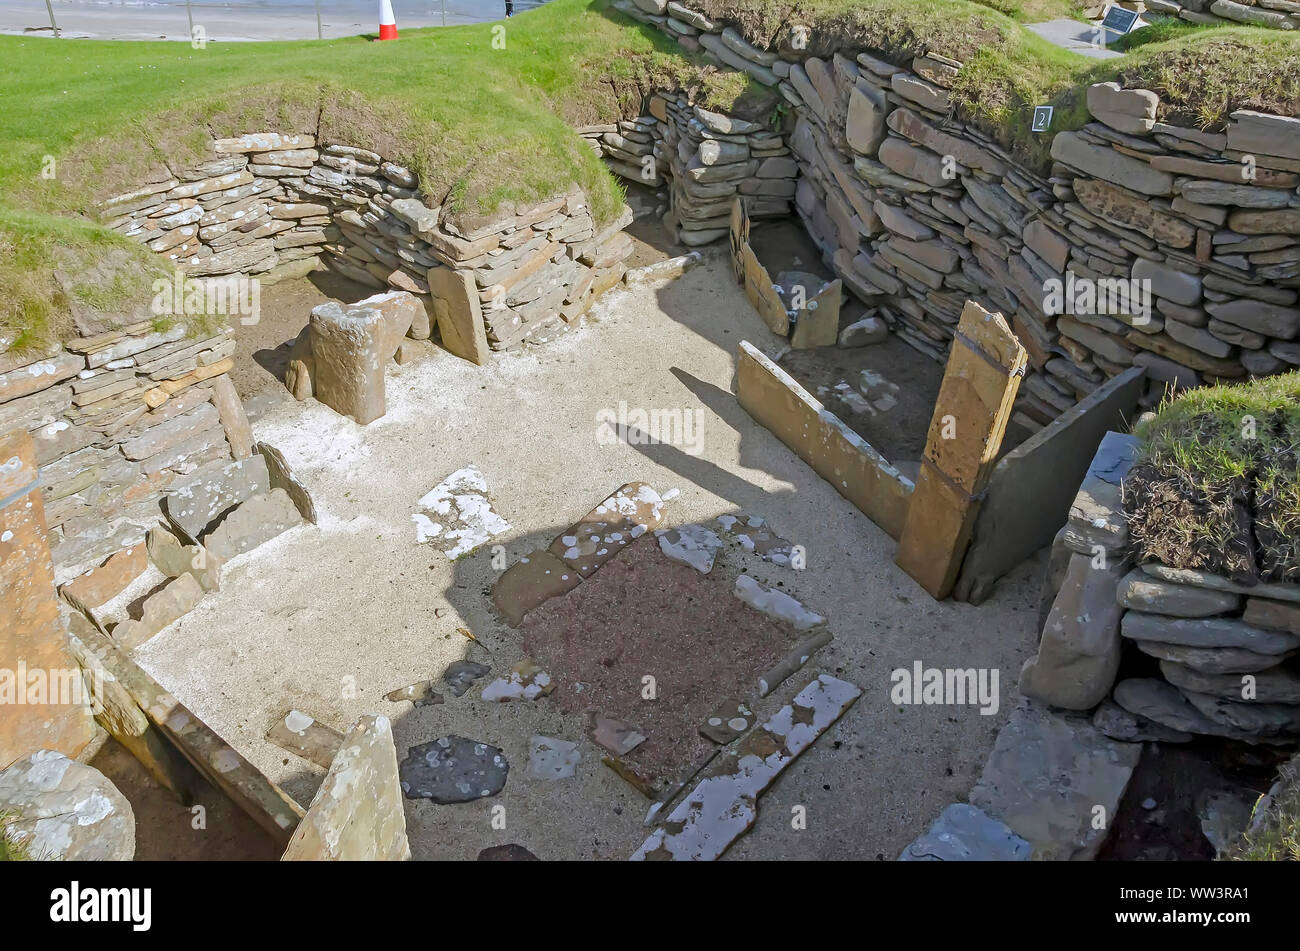 Skara Brae Neolitchic solución más de 5.000 años de antigüedad es la mejor conservada de la Edad de Piedra aldea neolítica en el norte de Europa, las Islas Orcadas, Escocia Foto de stock